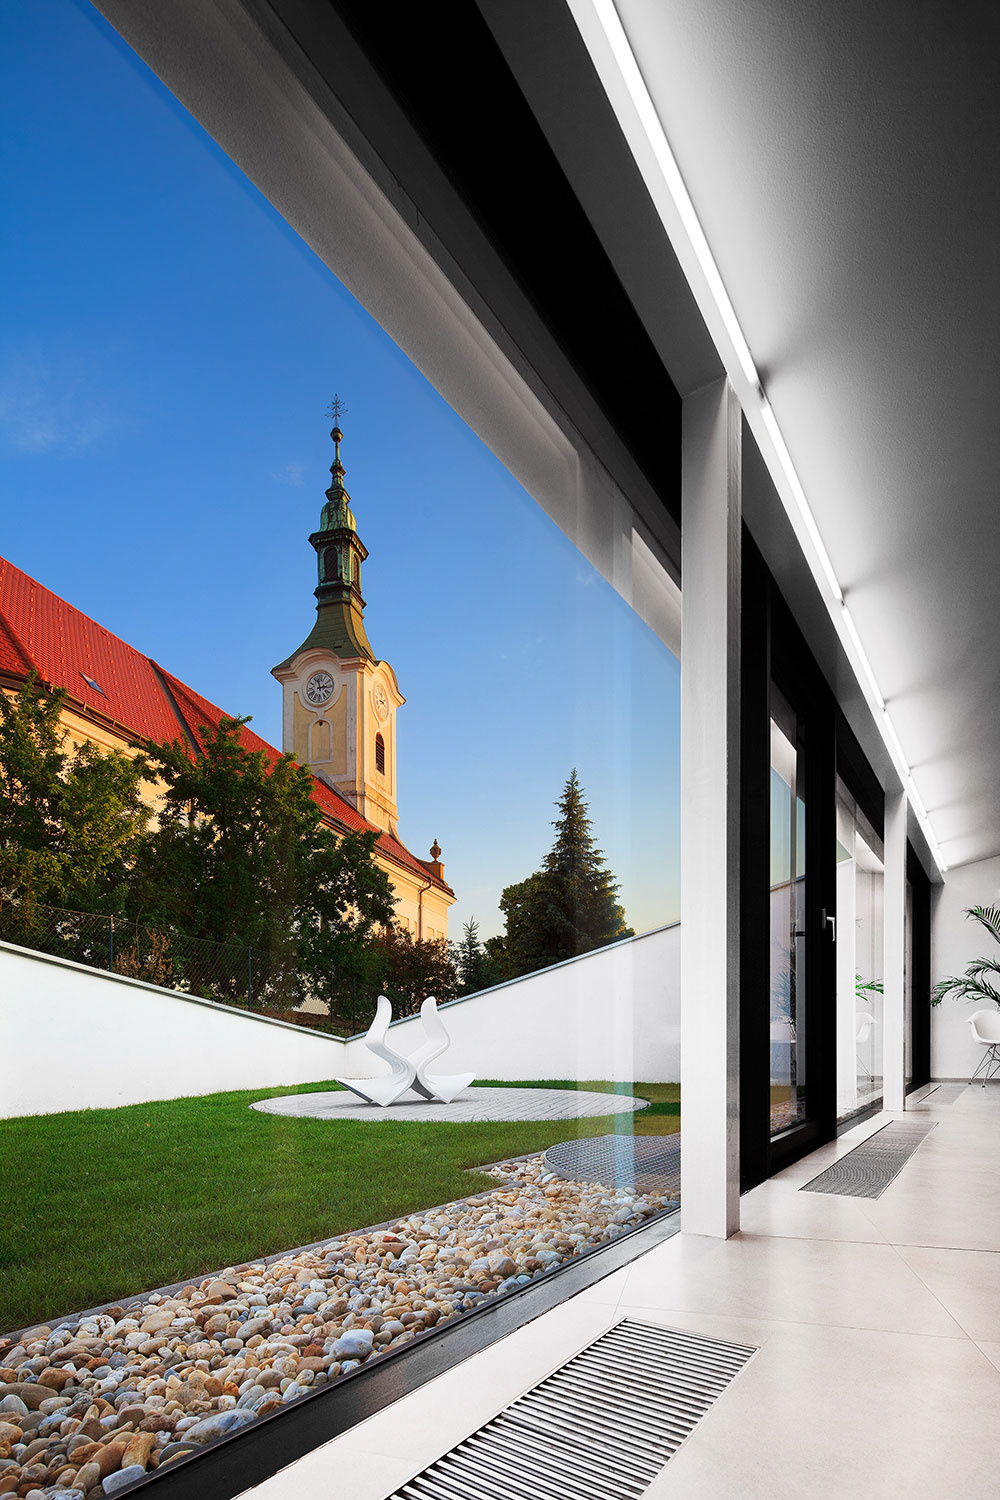 Dom pre kňaza v Dražovciach: Trvácnosť, čistota, ale aj vtipné riešenia